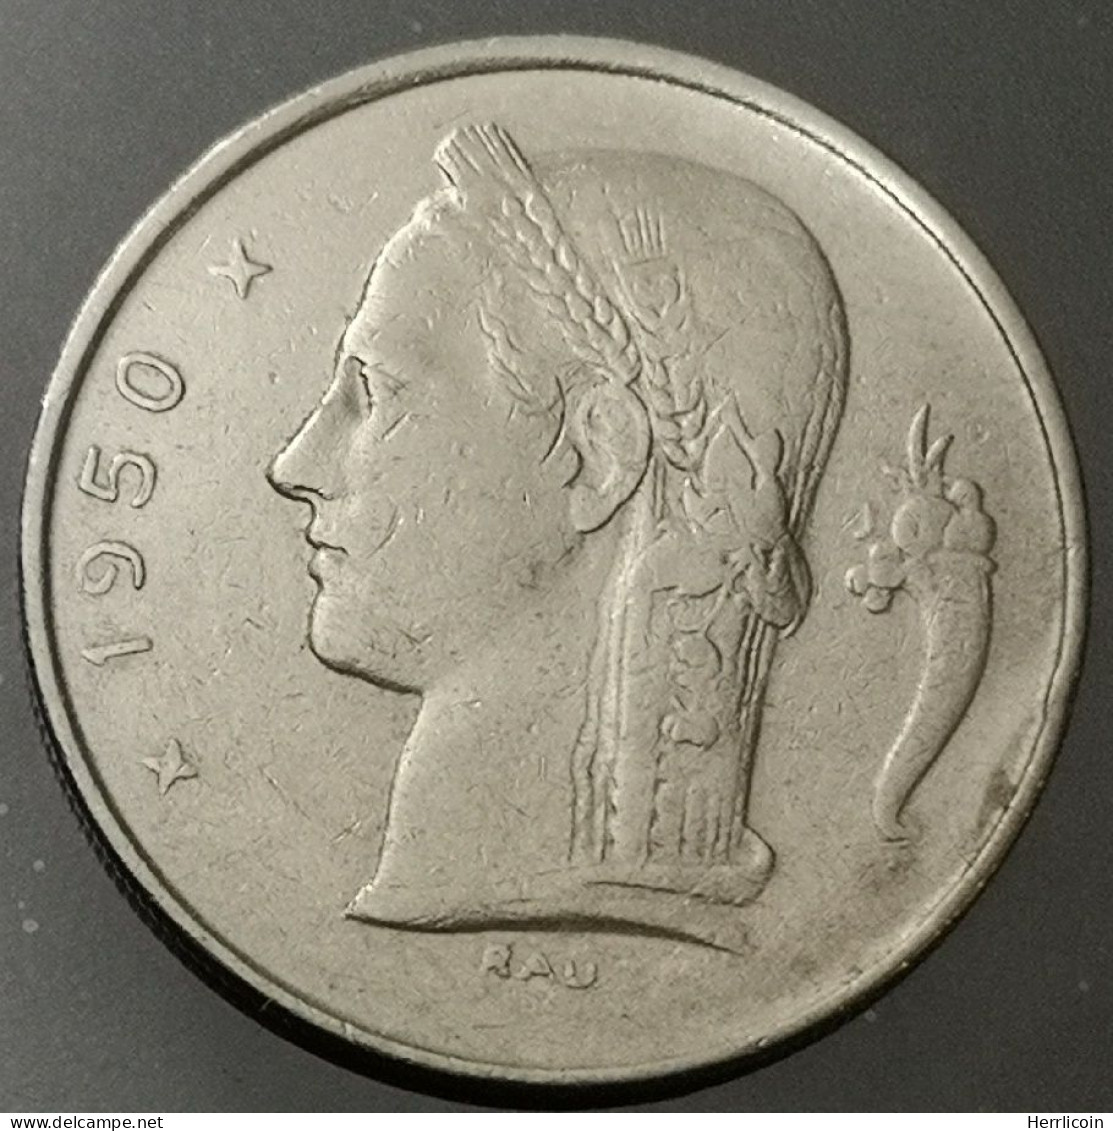 Monnaie Belgique - 1950 - 1 Franc Type Cérès en Français - 1 Franc